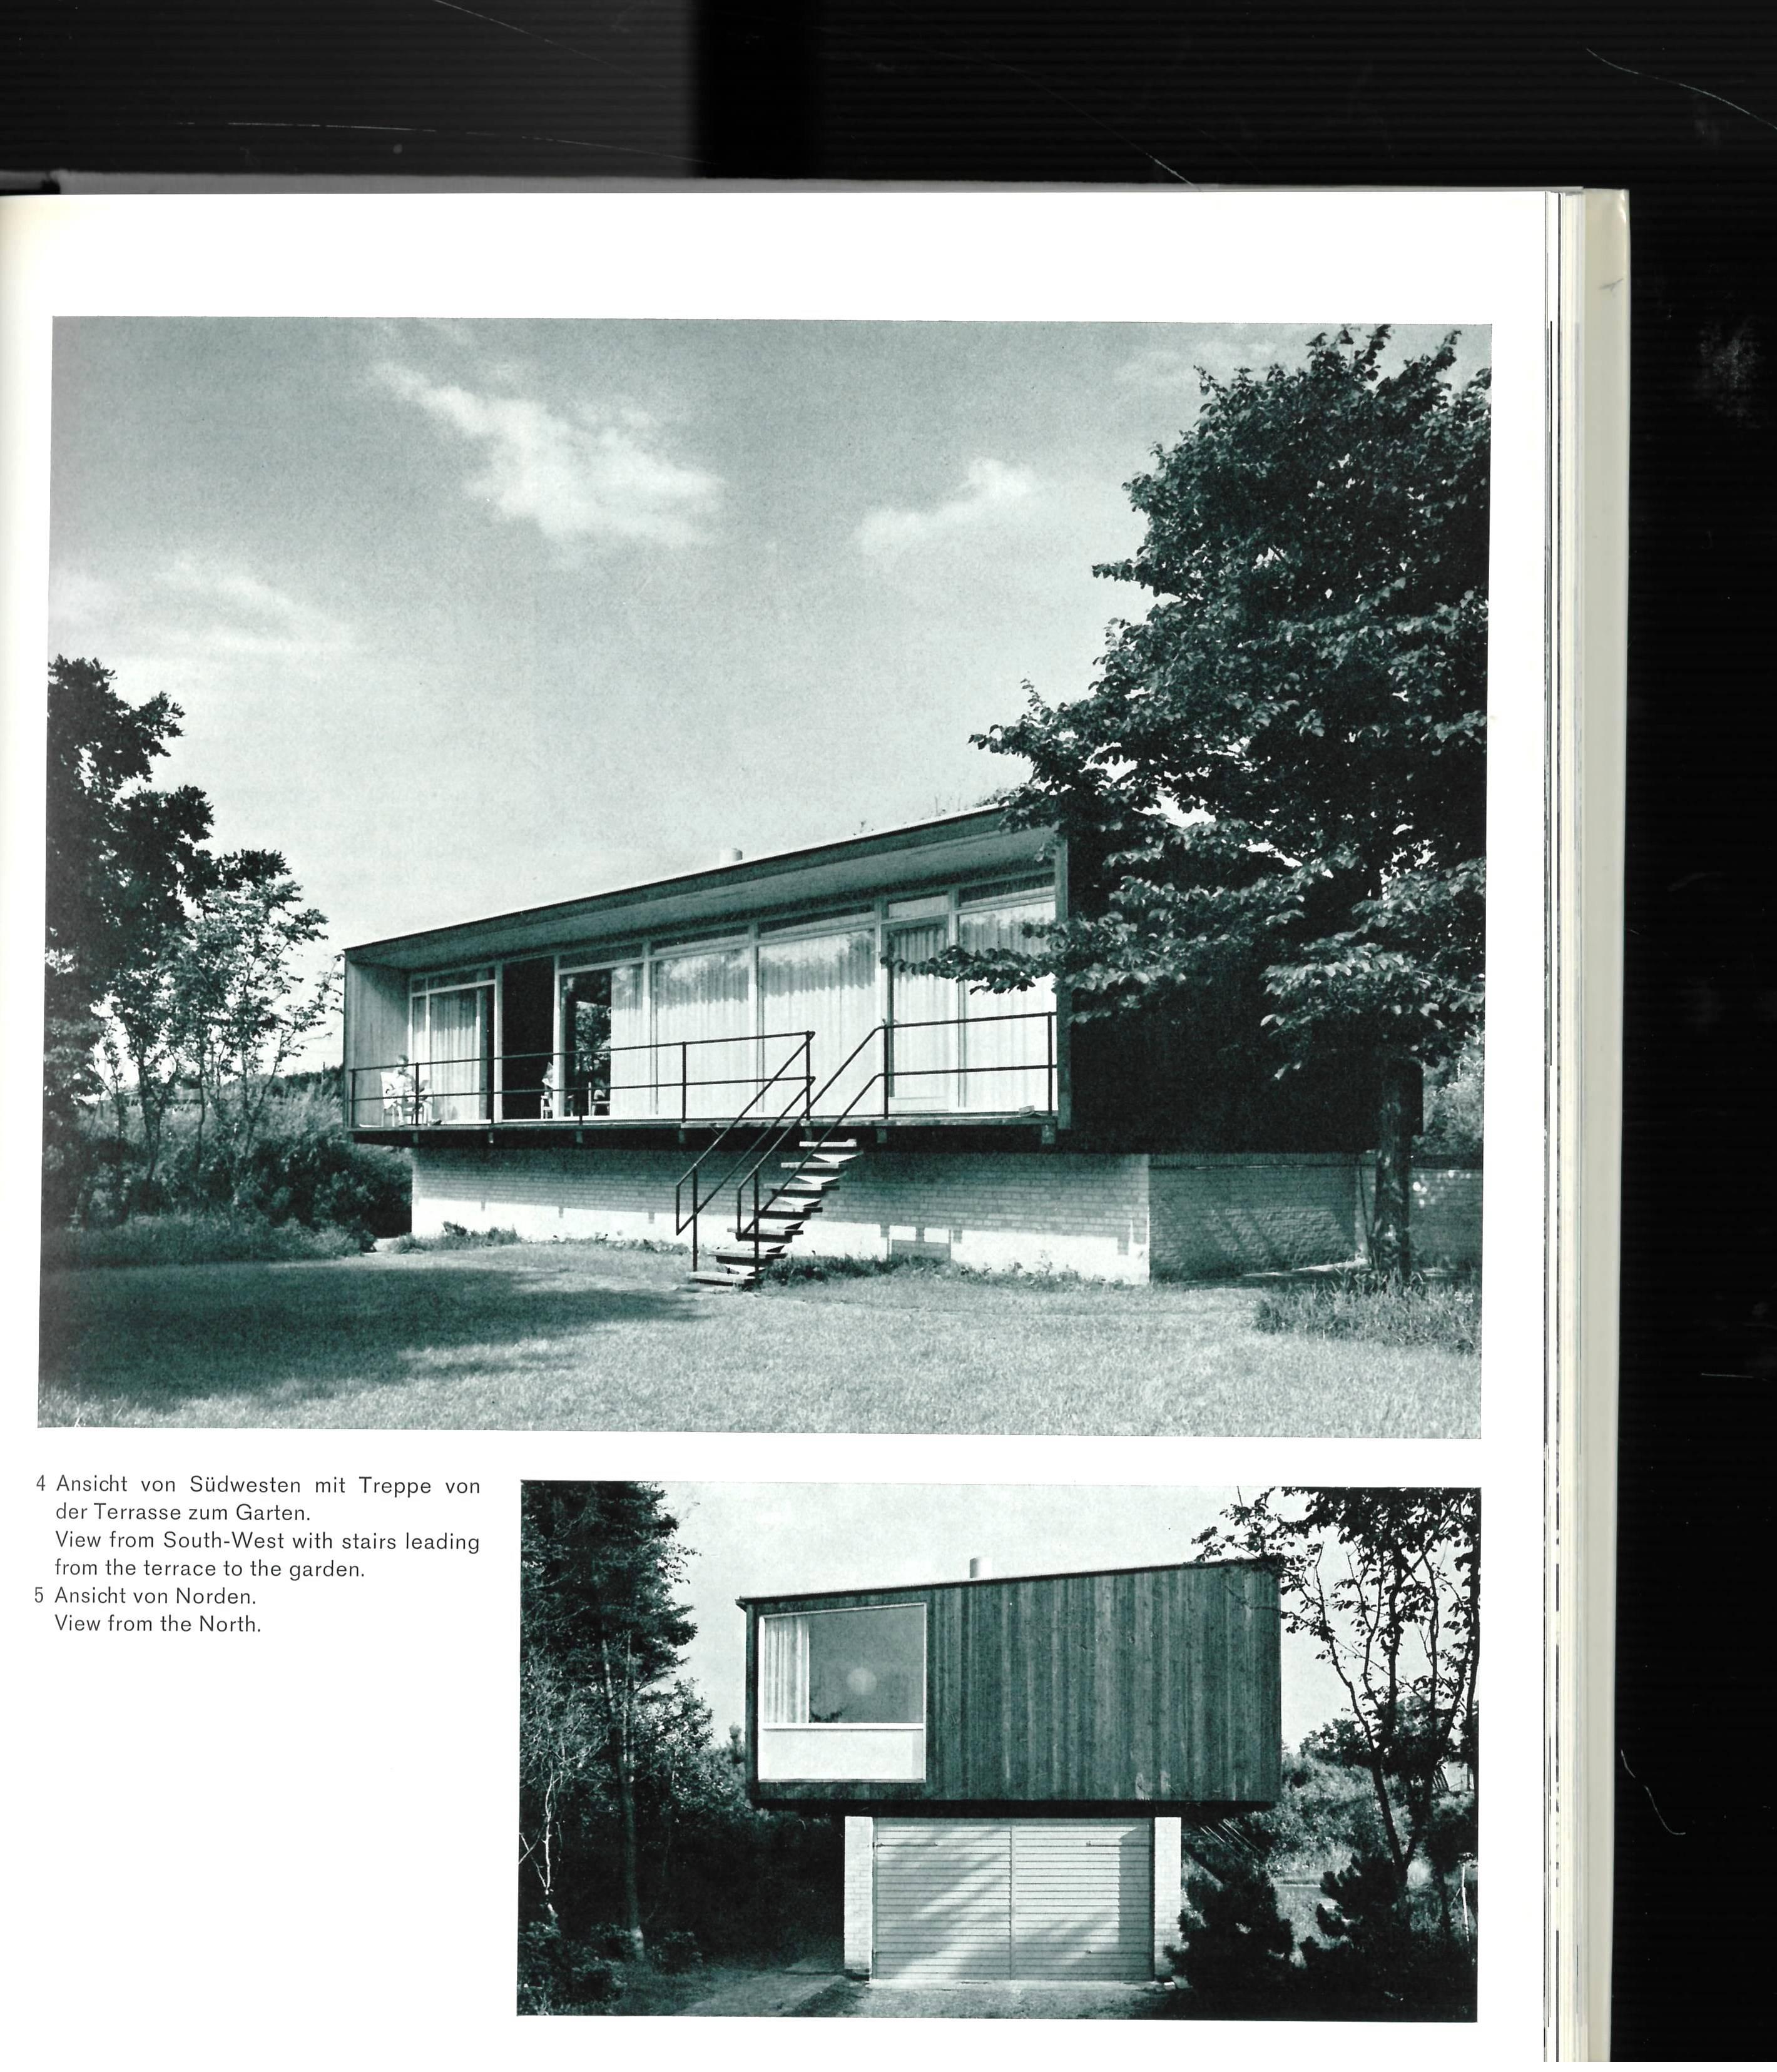 Aujourd'hui, on se souvient surtout d'Arne Jacobsen pour ses chaises et ses meubles, mais il était avant tout architecte et c'est ainsi qu'il avait été formé. Ce livre traite principalement de l'aspect architectural de sa carrière, mais il est